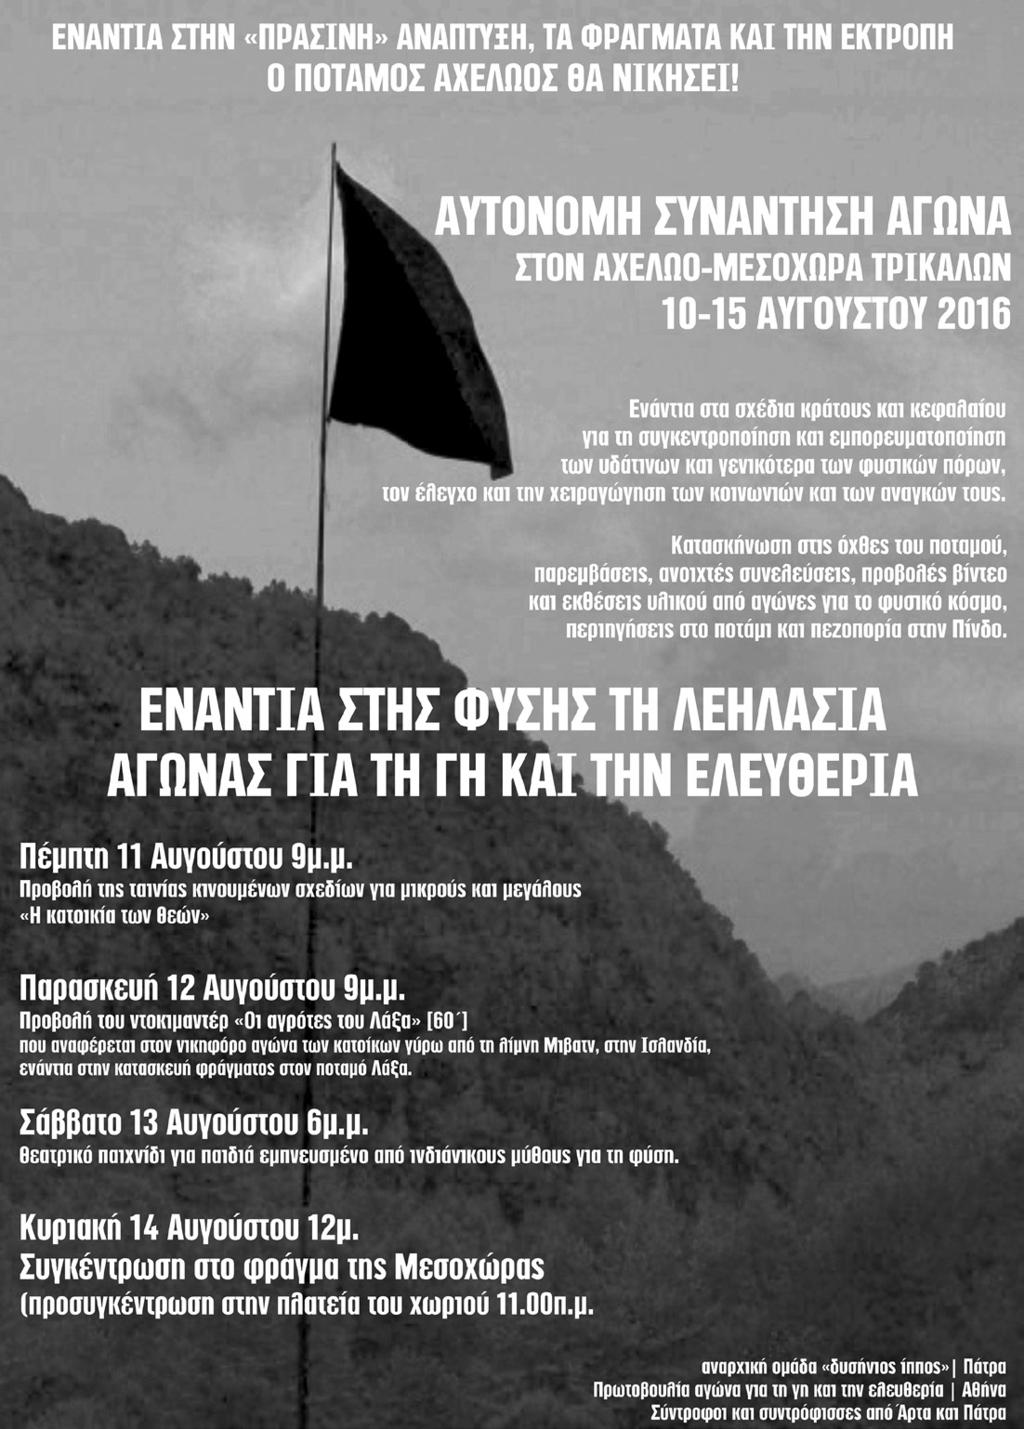 6 Γη & Ελευθερια Αυτόνομη συνάντηση αγώνα ενάντια στα φράγματα και την εκτροπή του ποταμού Αχελώου Από τις 10 μέχρι τις 15 Αυγούστου 2016 πραγματοποιήθηκε για 10η συνεχή χρονιά η κινητοποίηση ενάντια